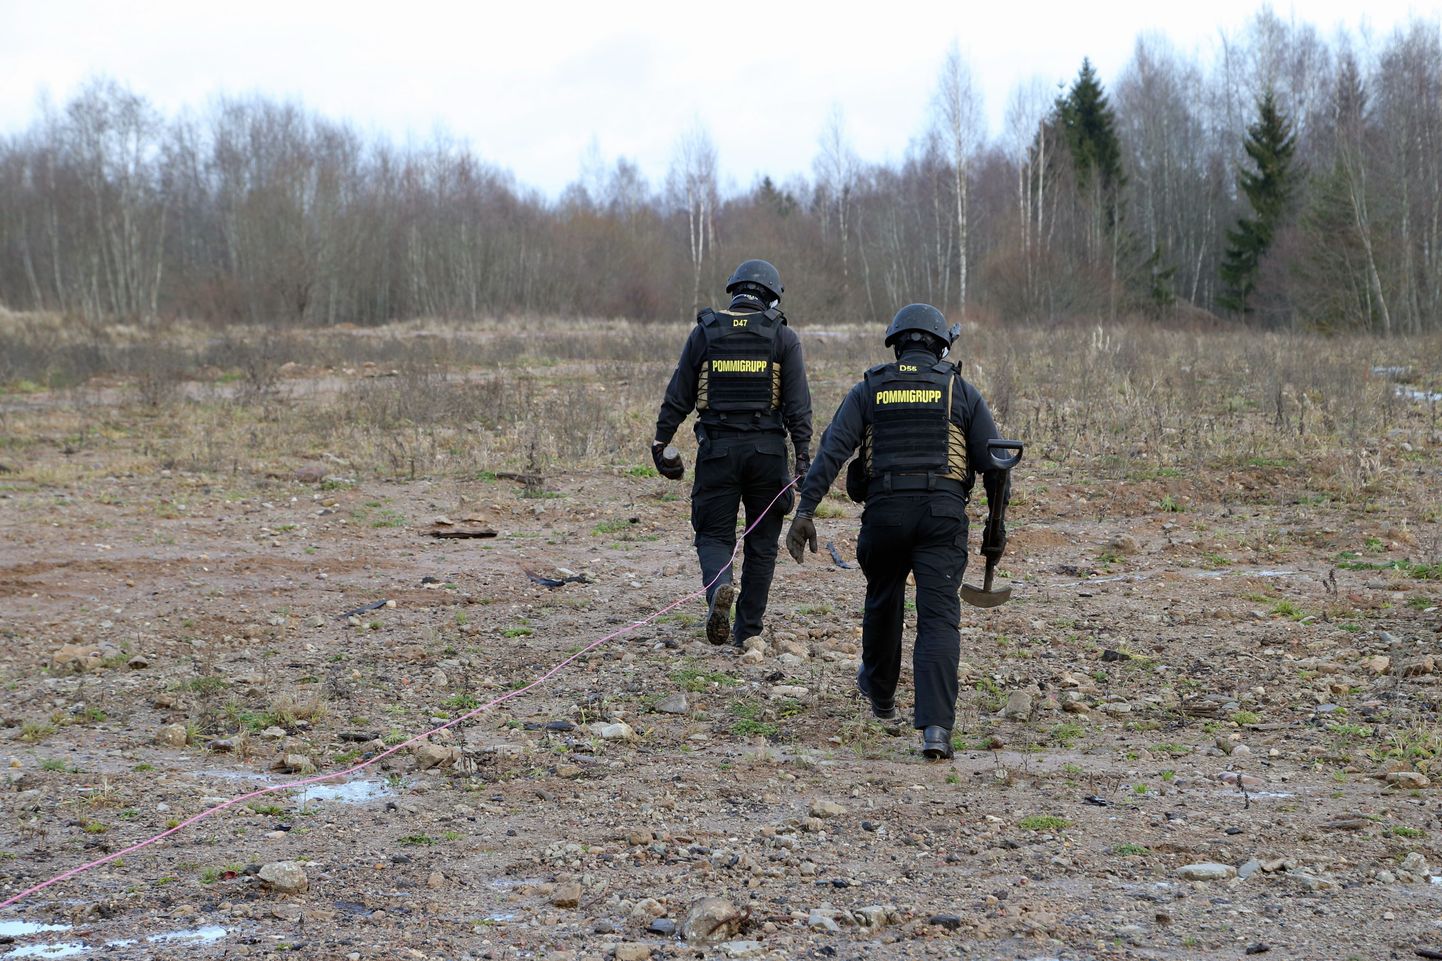 Lõuna-Eesti pommigrupp. Foto on illustratiivne